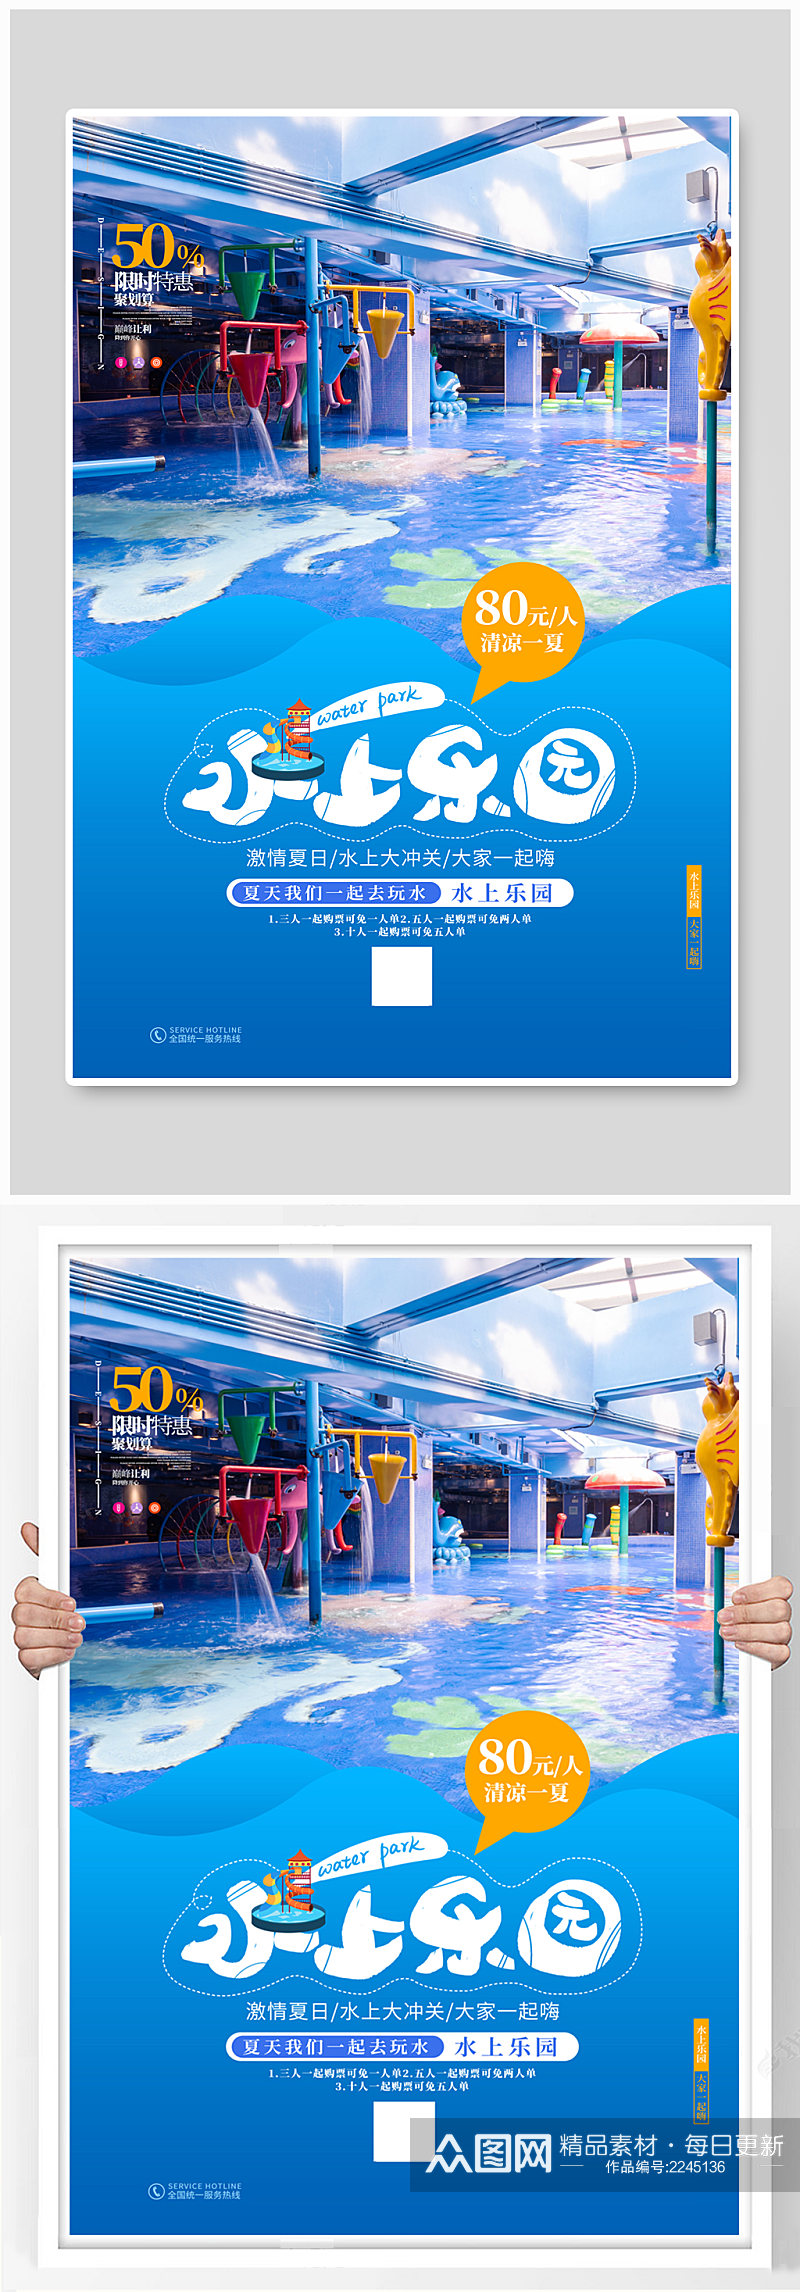 蓝色水上乐园水上嘉年华游乐场宣传促销海报素材